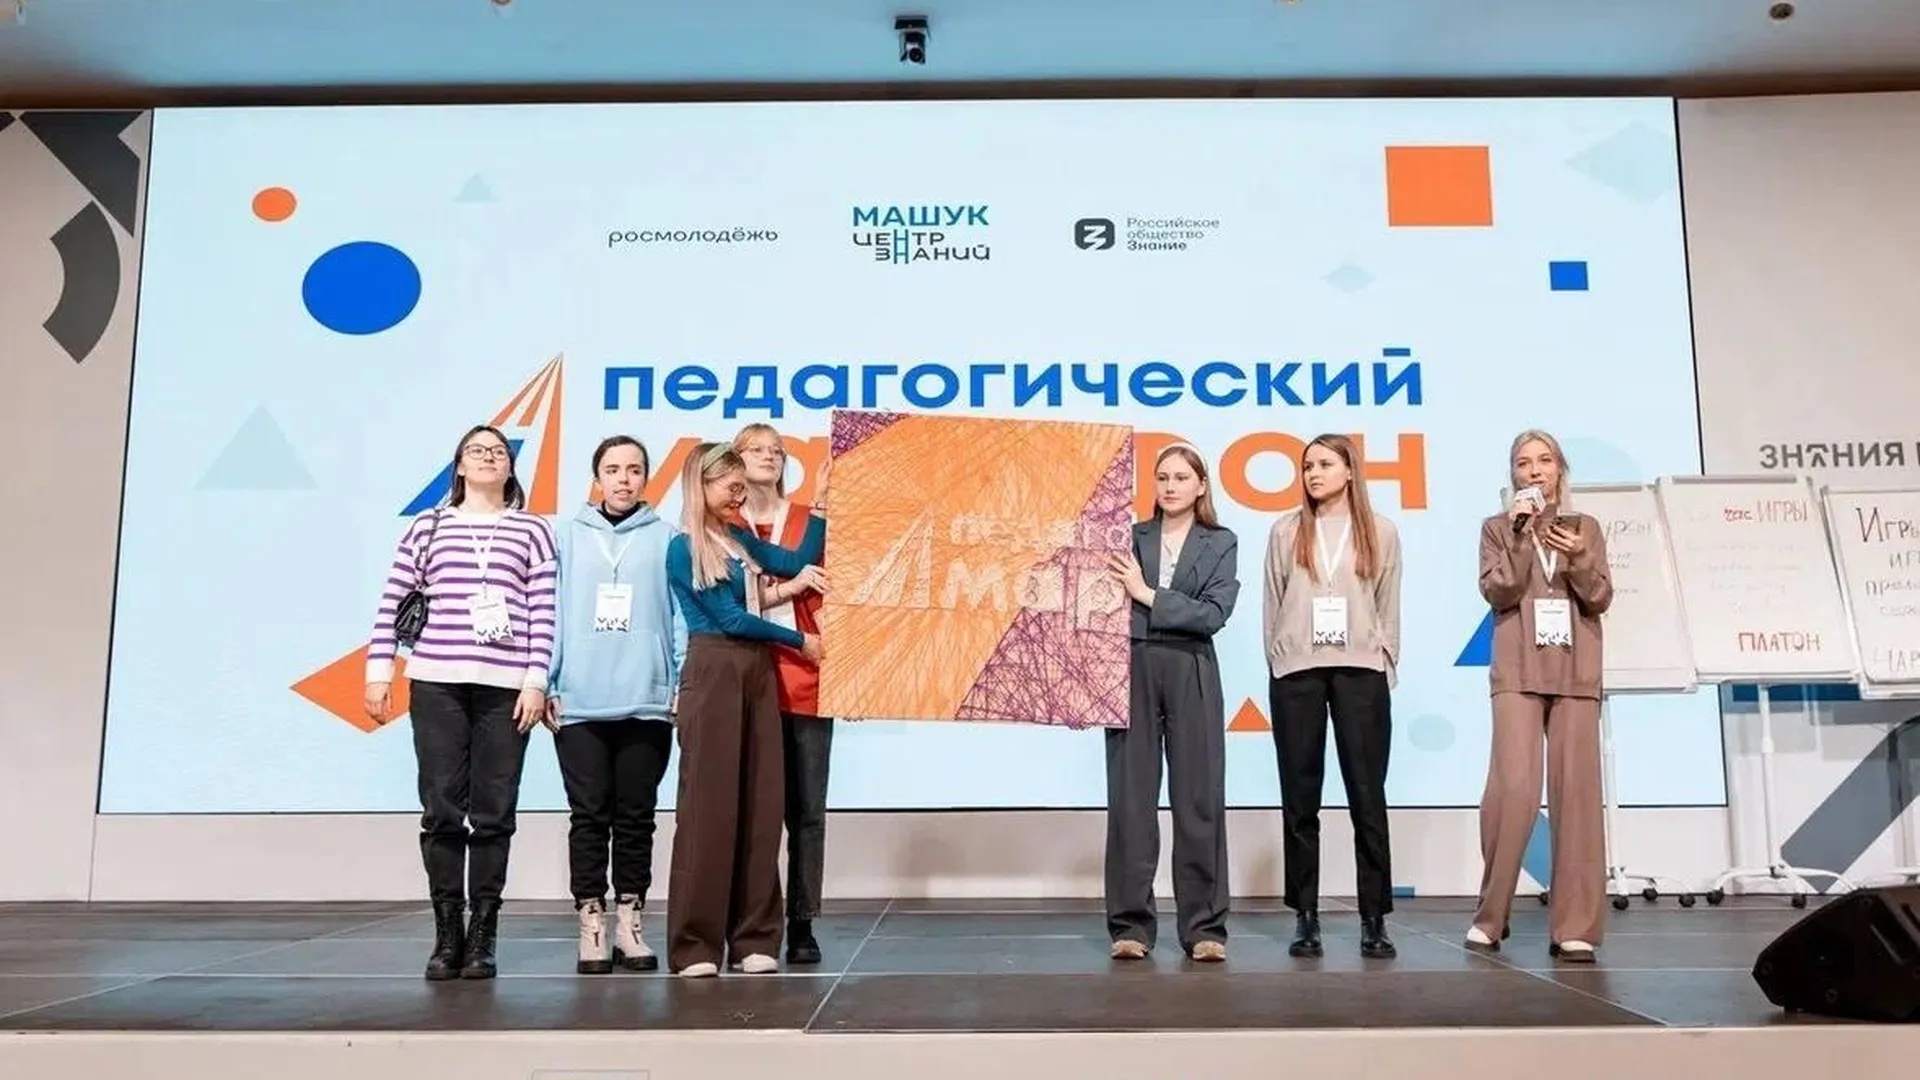 Студентки Губернского колледжа представили Подмосковье на педагогическом форуме в Пятигорске